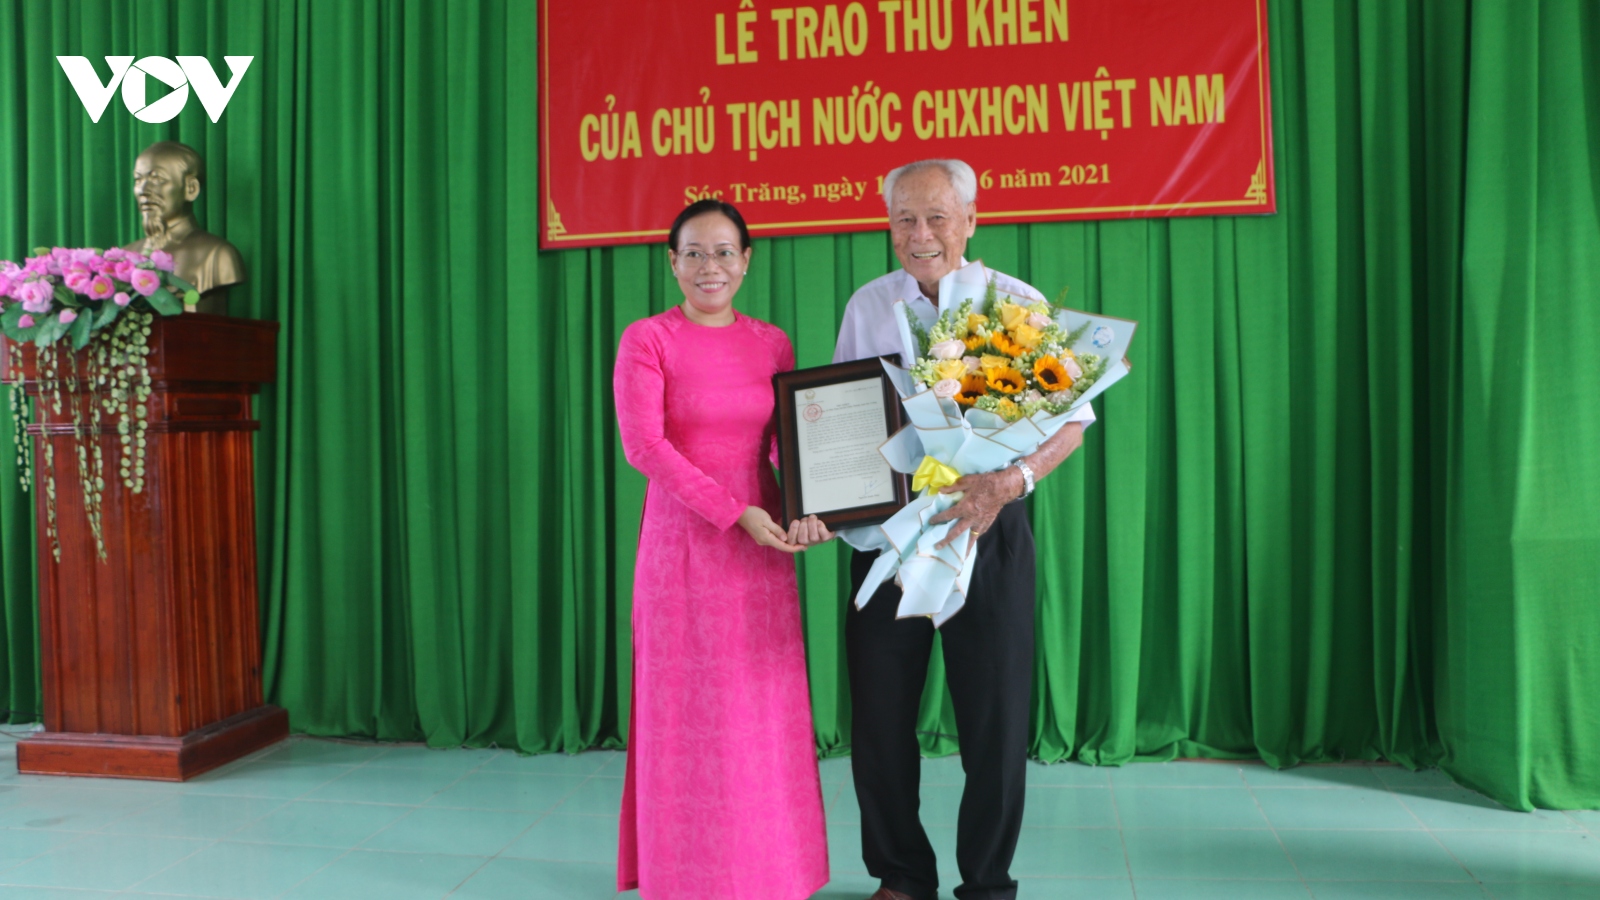 Chủ tịch nước gửi thư khen cụ Trần Cang, người cao tuổi có nhiều năm liền làm từ thiện